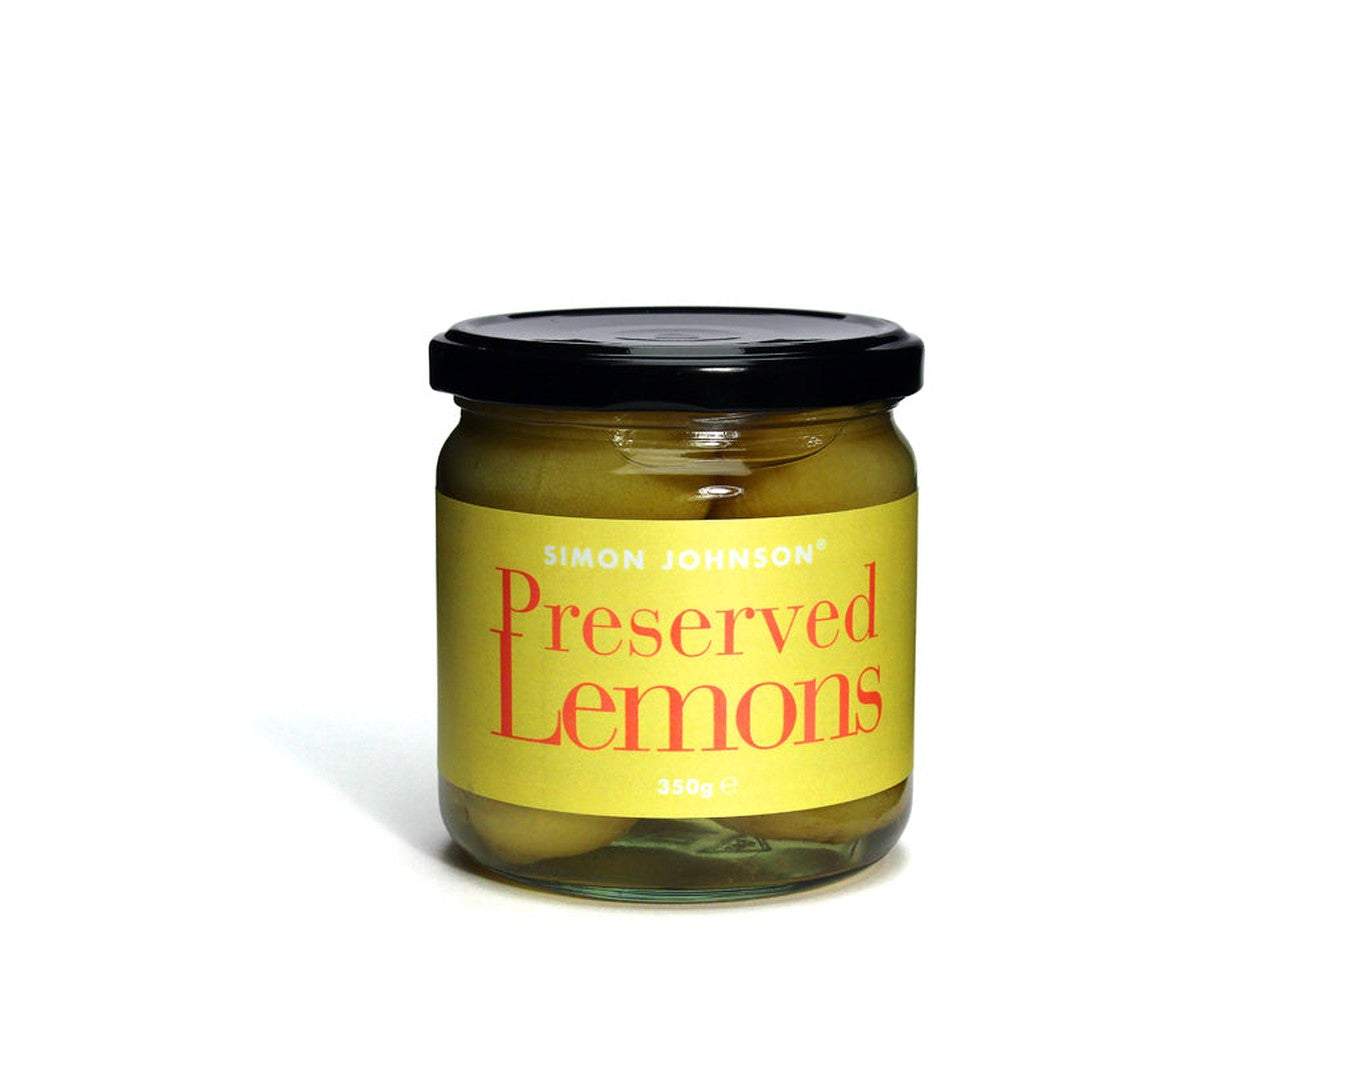 Simon Johnson Preserved Lemons 350gr-Preserved-The Local Basket